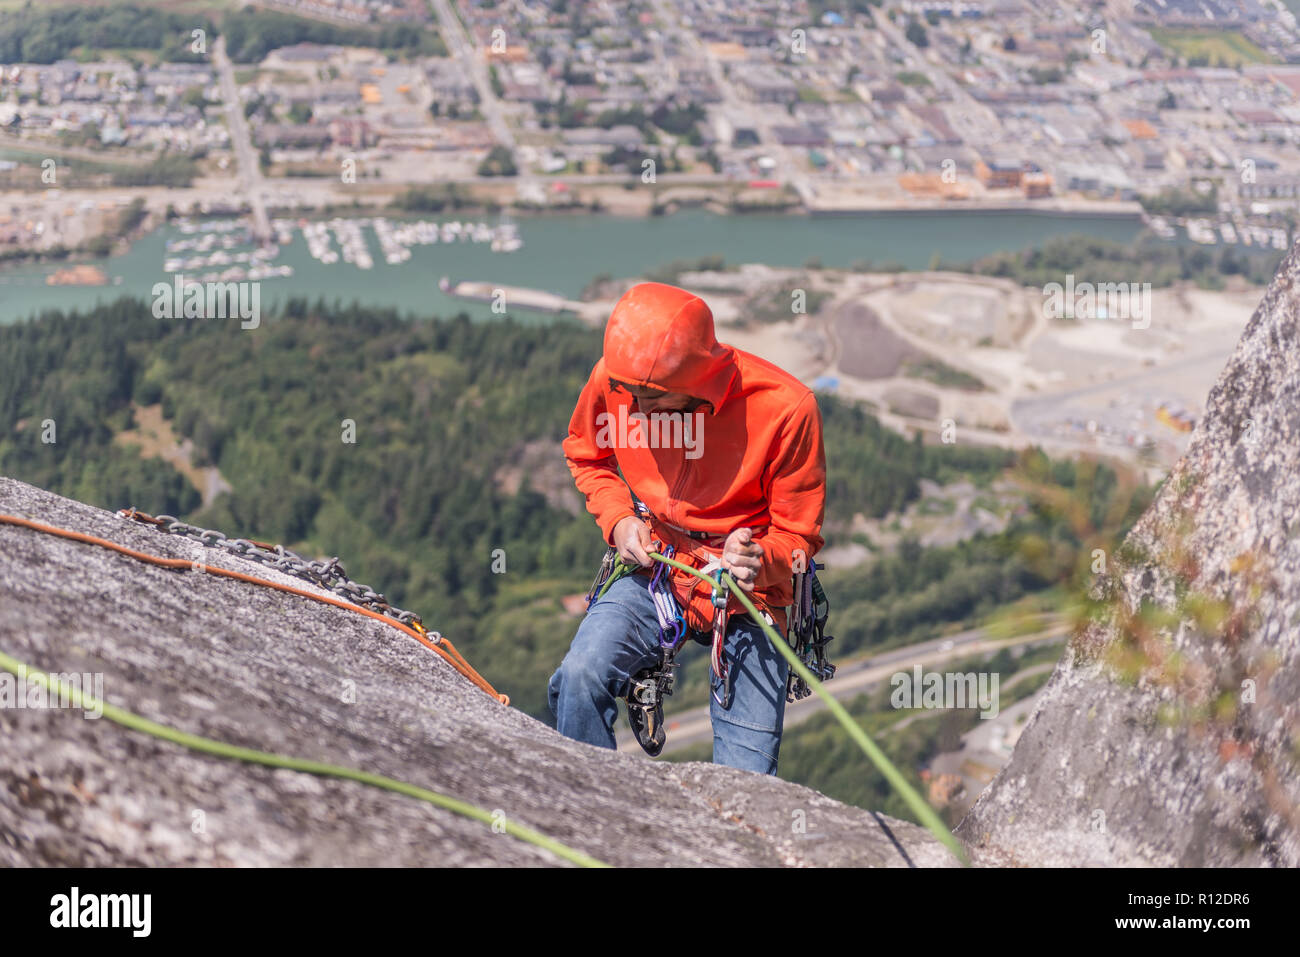 L'escalade de rocher, Squamish, Canada Banque D'Images